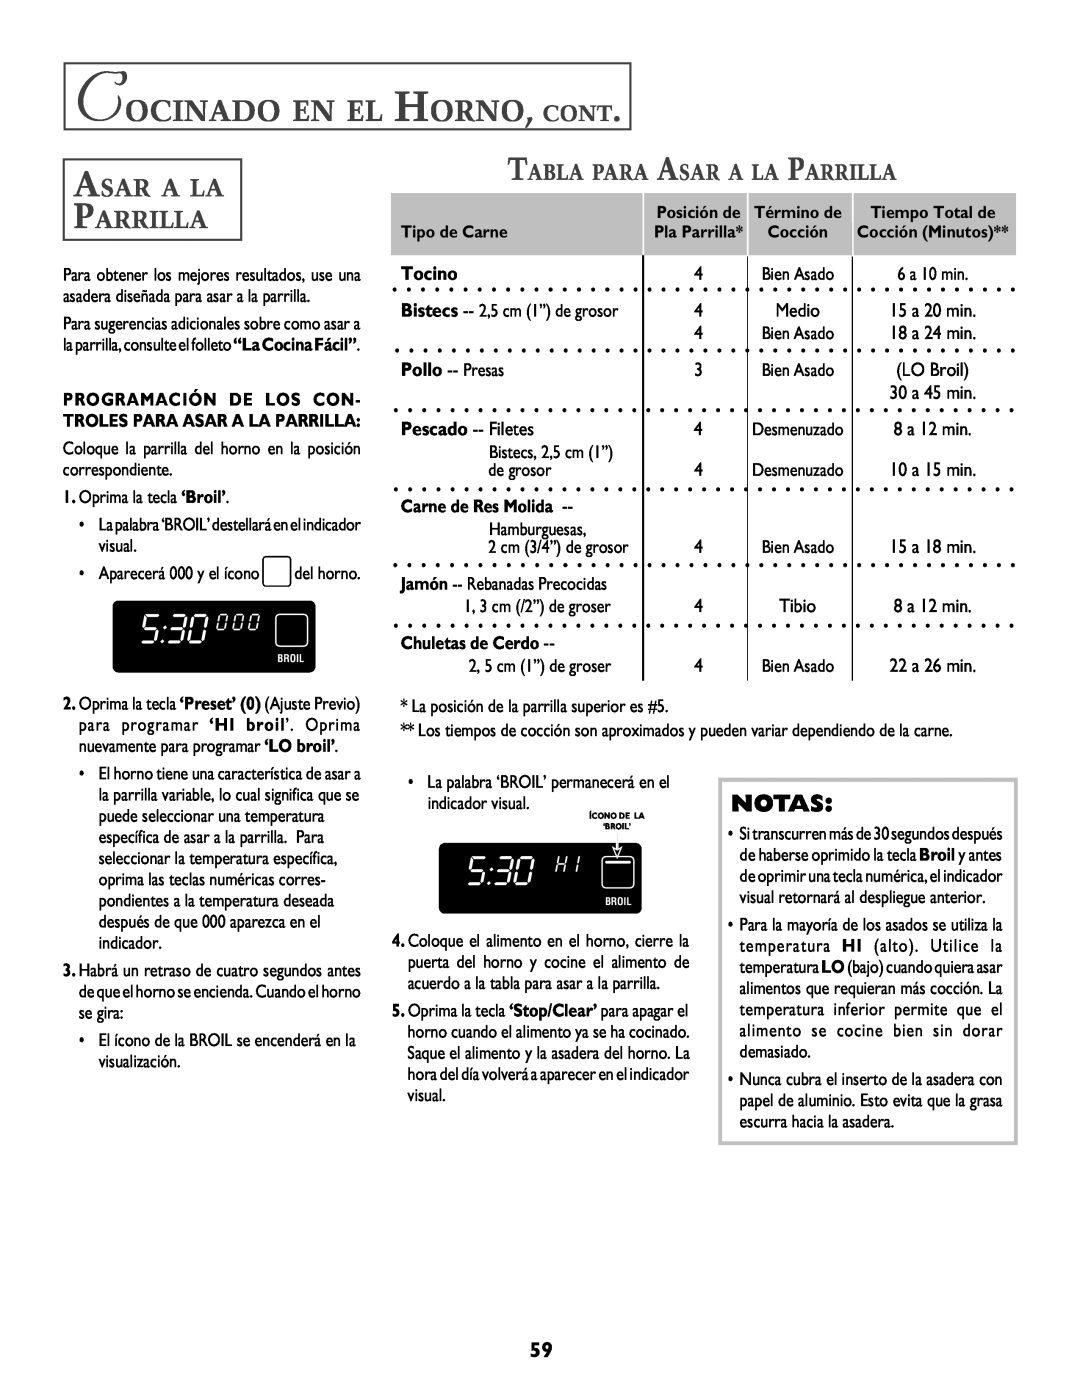 Jenn-Air T2 Tabla Para Asar A La Parrilla, Tocino, Pollo -- Presas, 530 0 0, 530 H, Cocinado En El Horno, Cont 